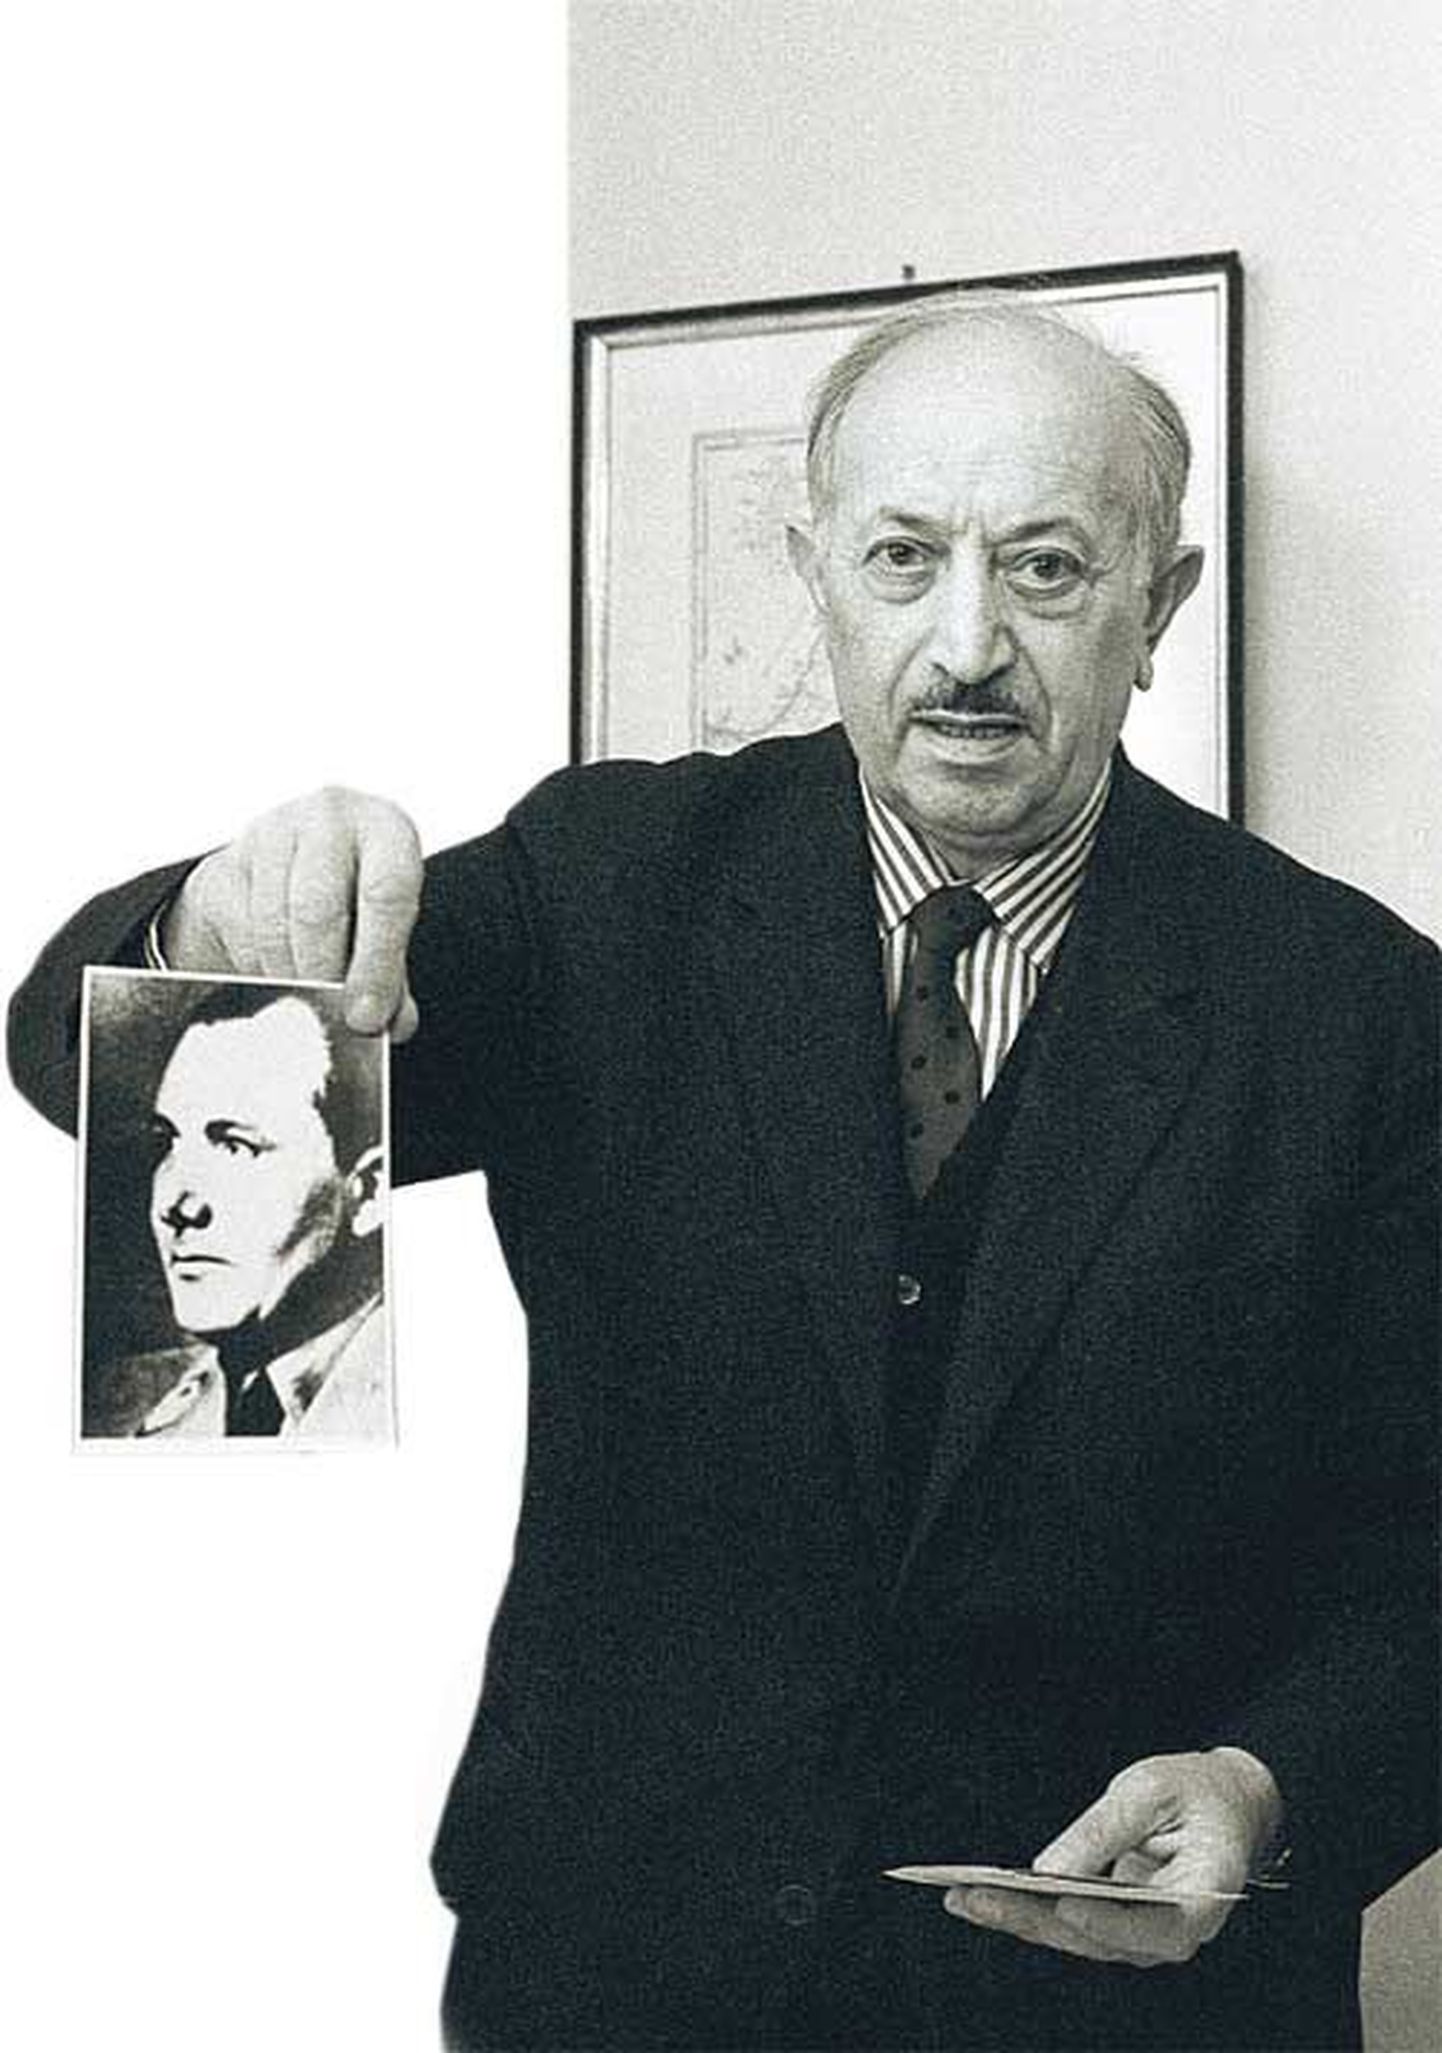 Holokausti üle elanud natsikütt Simon Wiesenthal näitab 1975. aastal oma kodus sõjakurjategija Martin Bormanni fotot. Louis Kilzer arutab oma raamatus, kas Bormann reetis Adolf Hitleri venelastele.